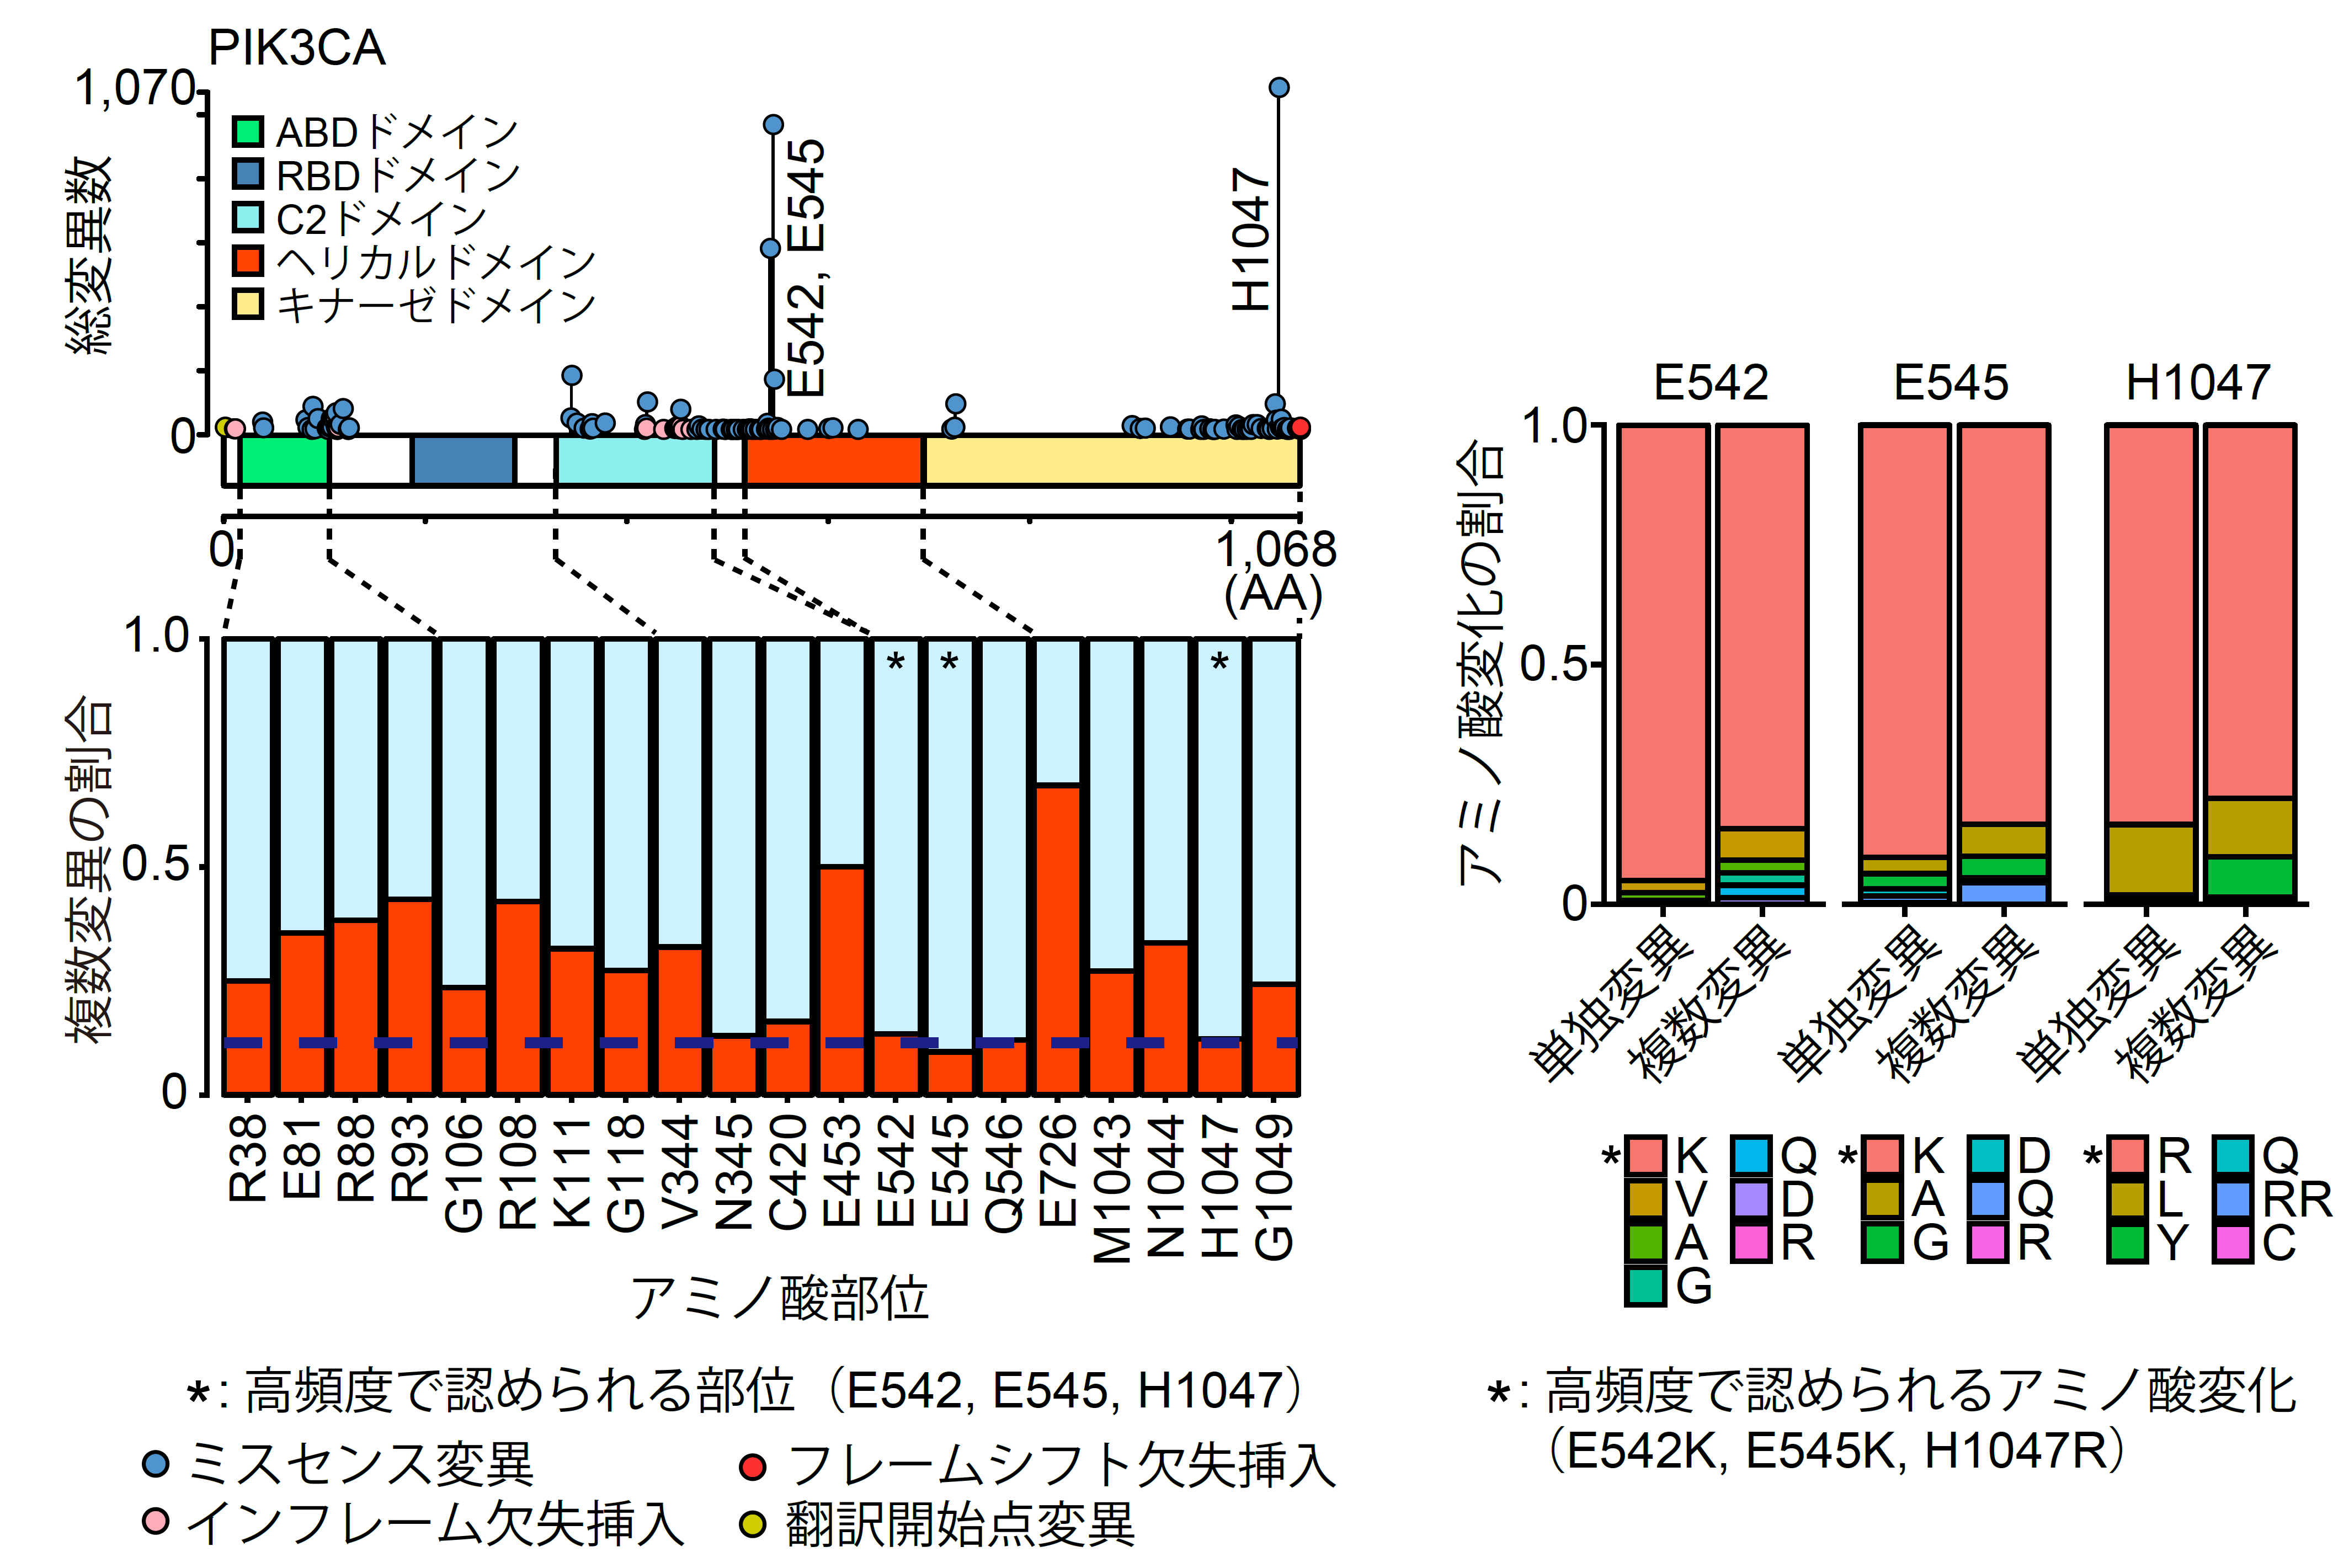 図3：PIK3CA遺伝子における単独変異と複数変異の変異パターンの違い